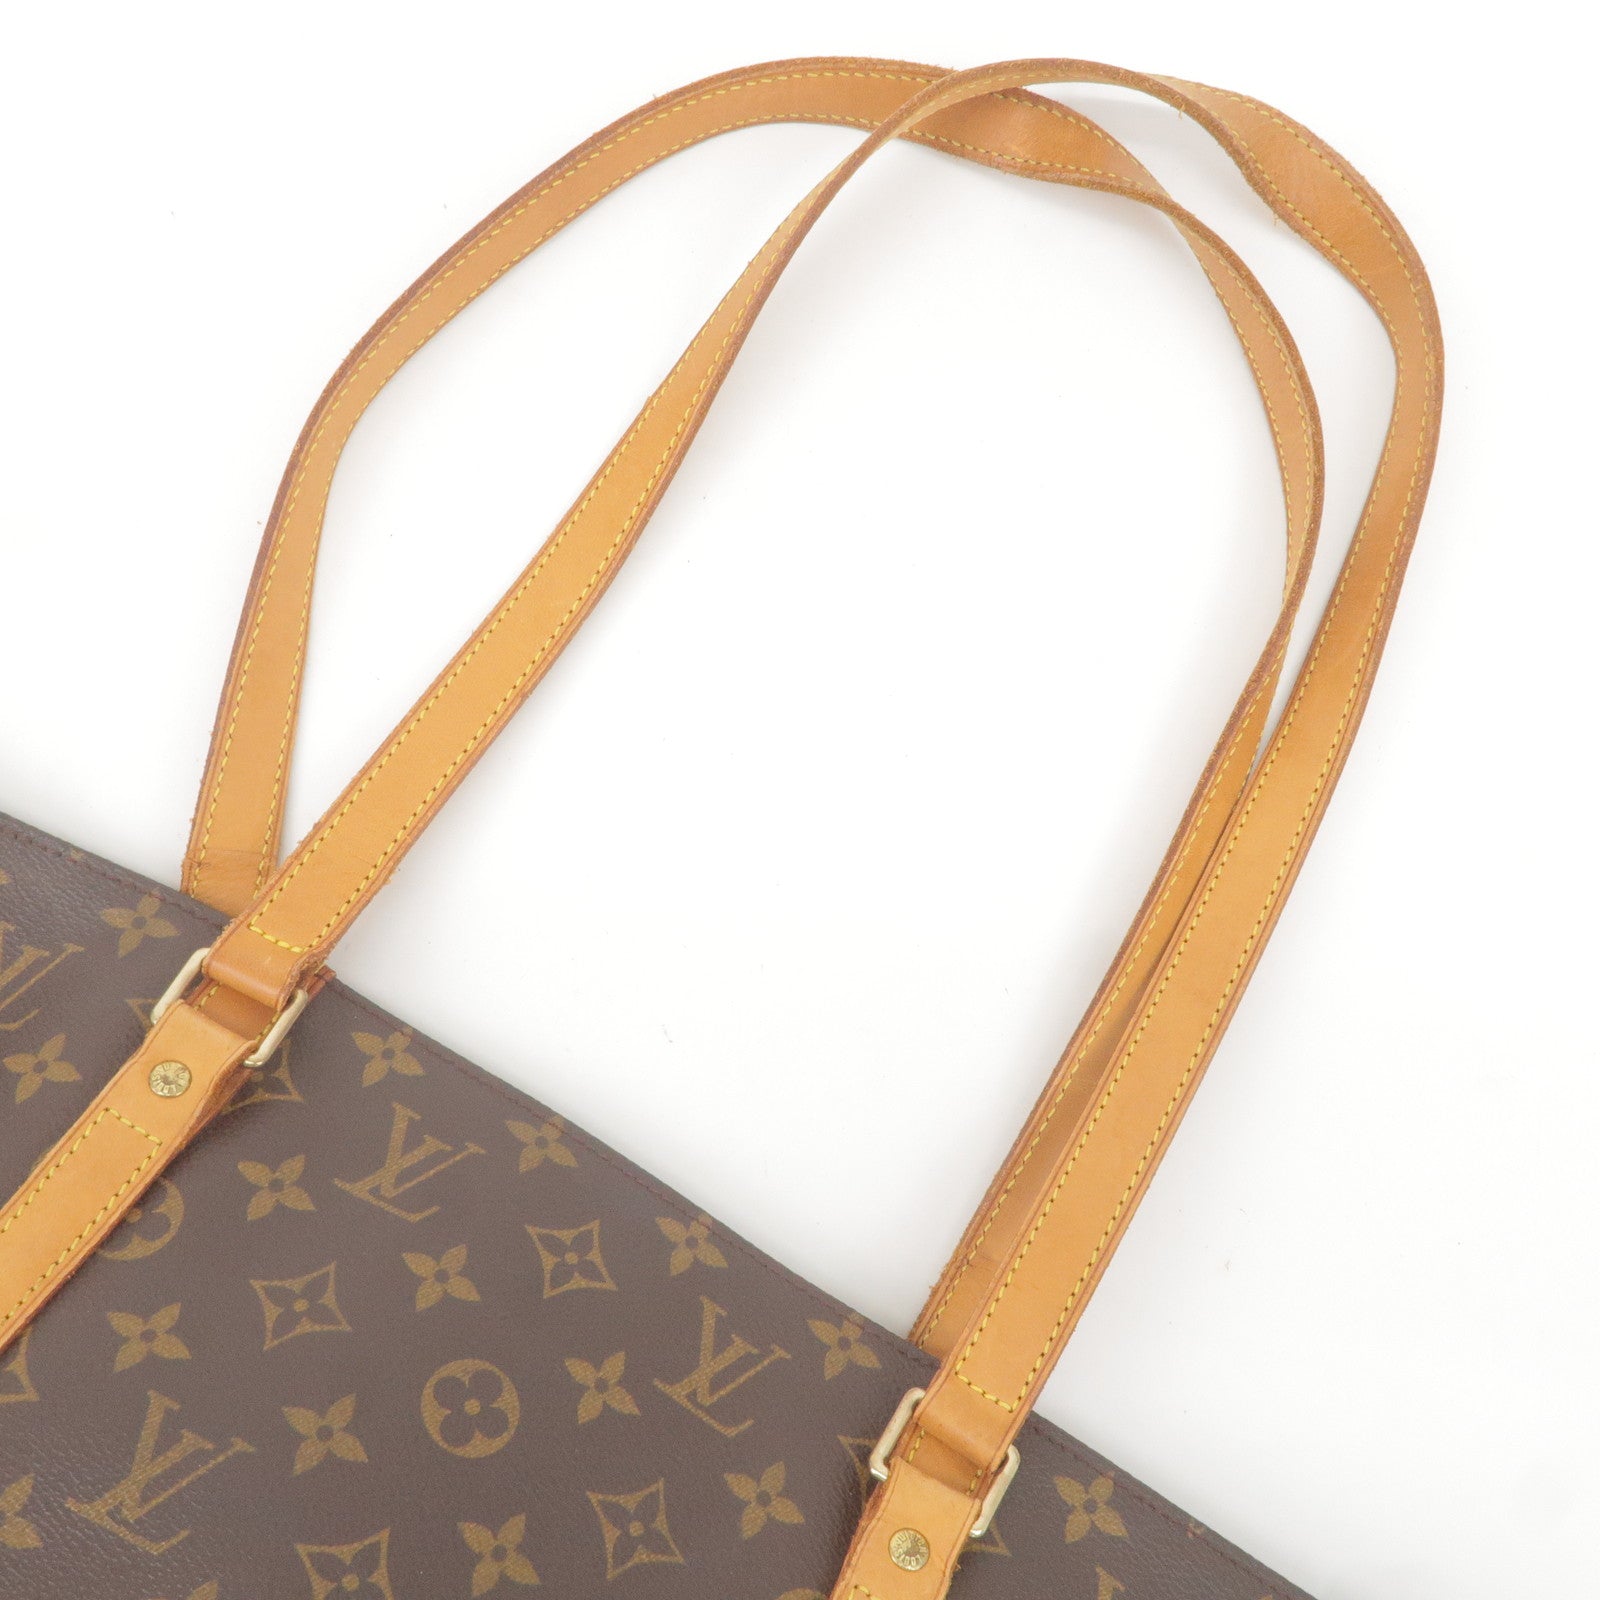 M51108 – dct - Vuitton - Sac - Louis - Shoulder - Monogram - Bag